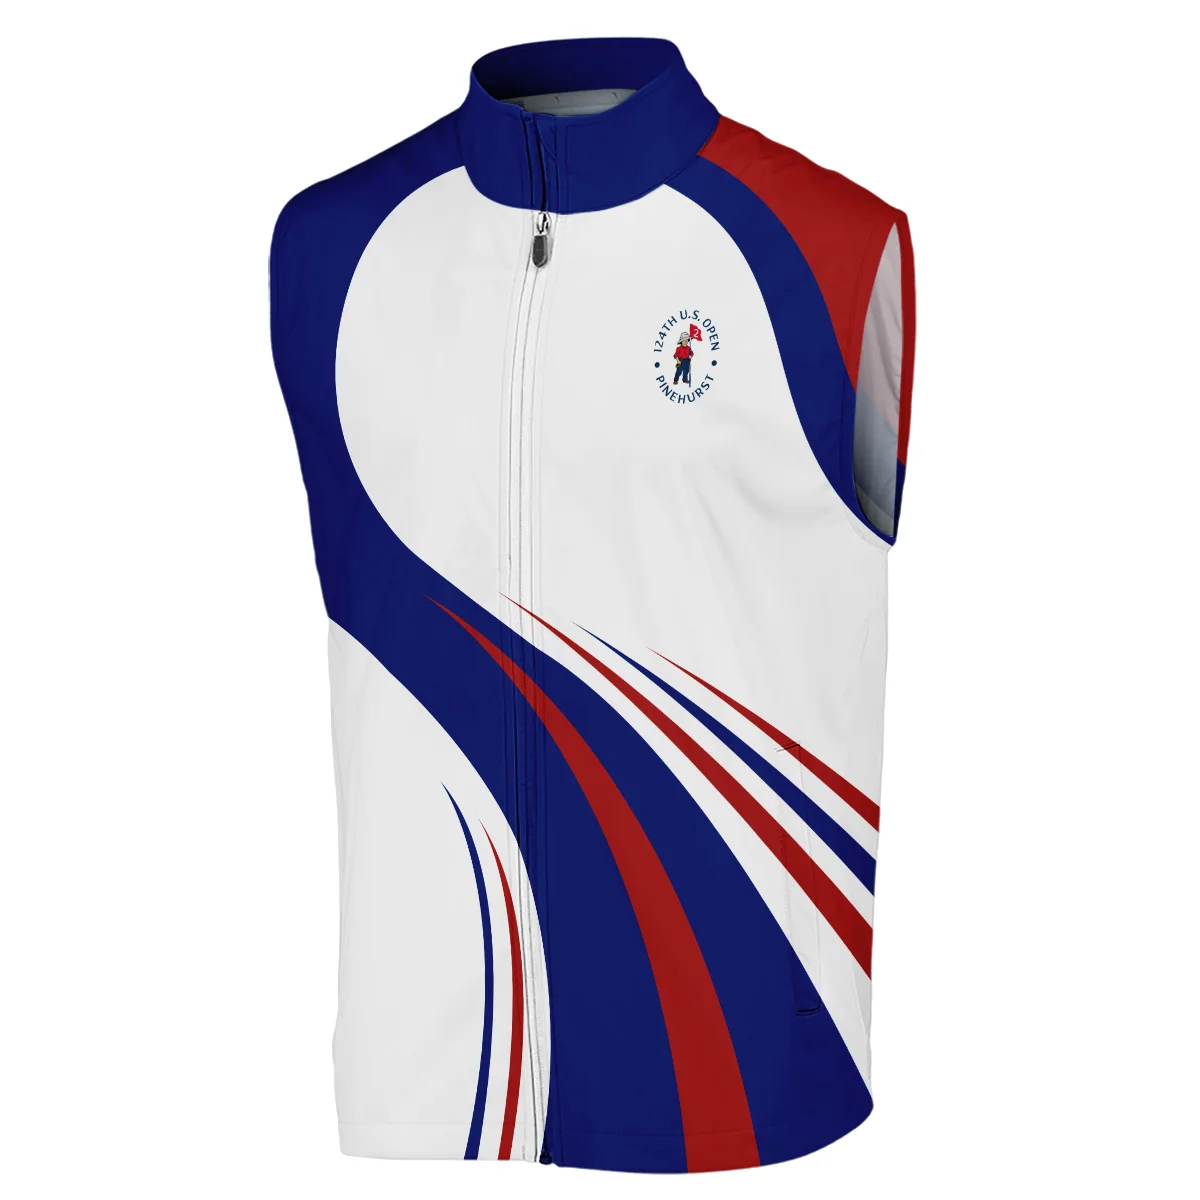 Ping 124th U.S. Open Pinehurst Golf Blue Red White Background Sleeveless Jacket Style Classic Sleeveless Jacket